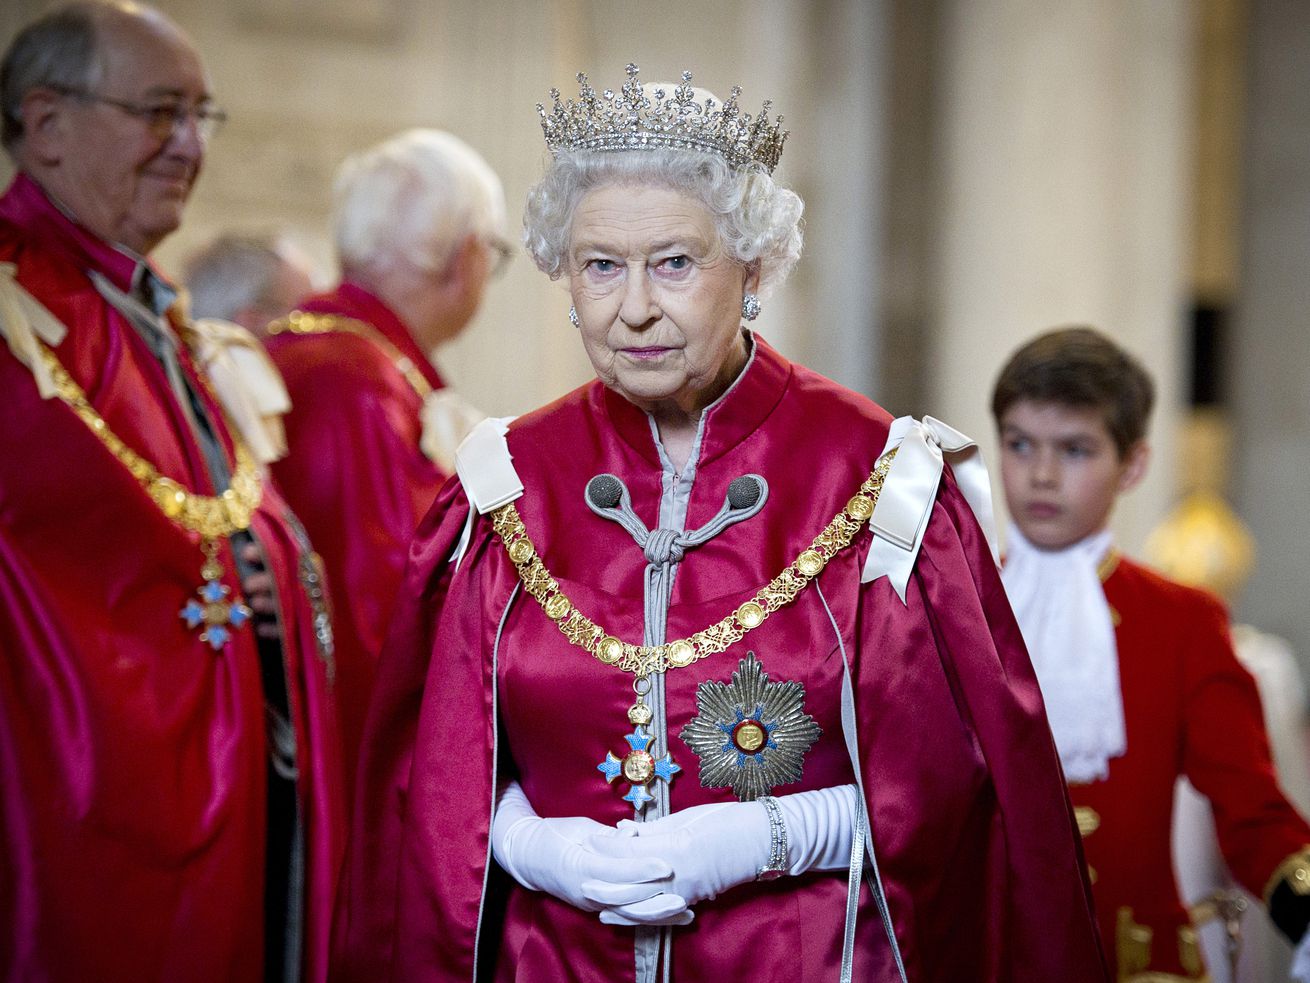 The subtle power of Queen Elizabeth II’s reign